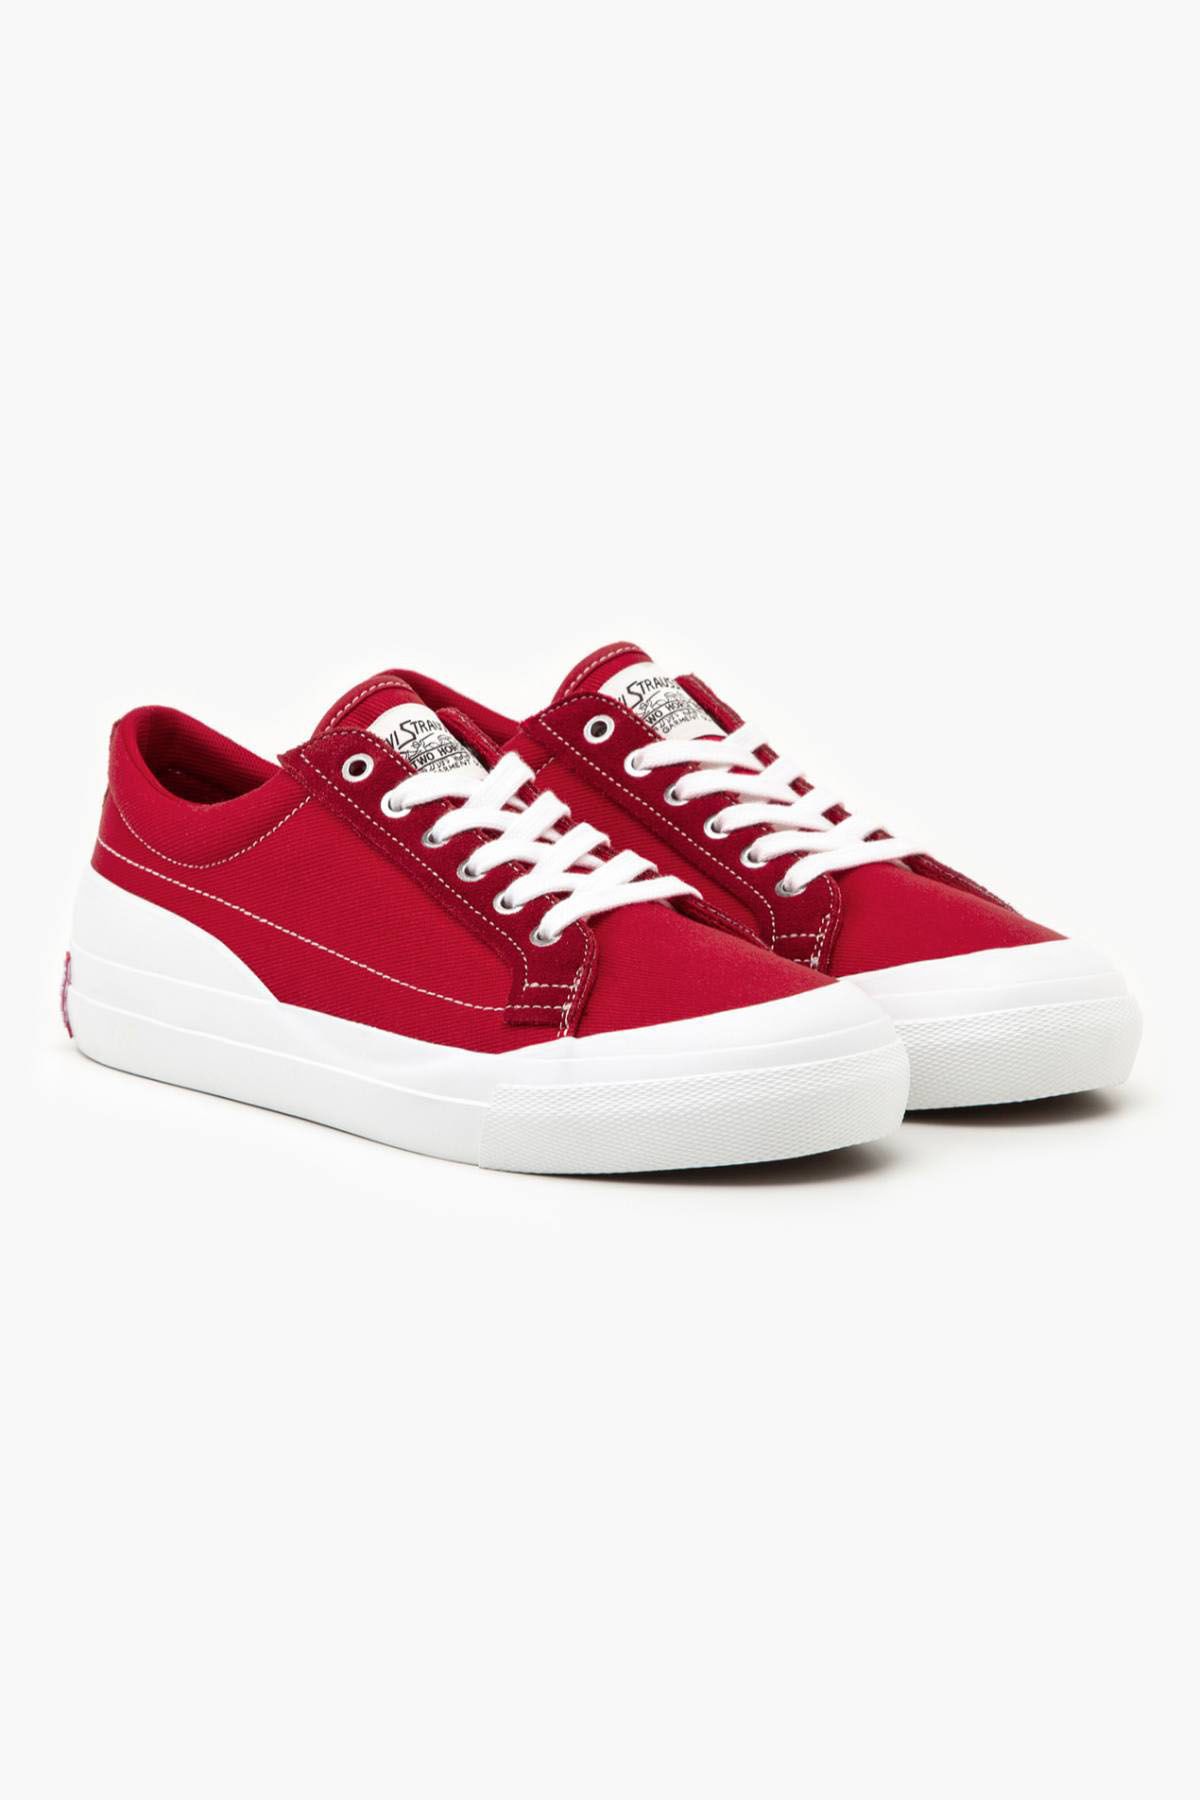 Levi's ® Levi's Men's LS1 Low Sneakers Red Men Sneakers